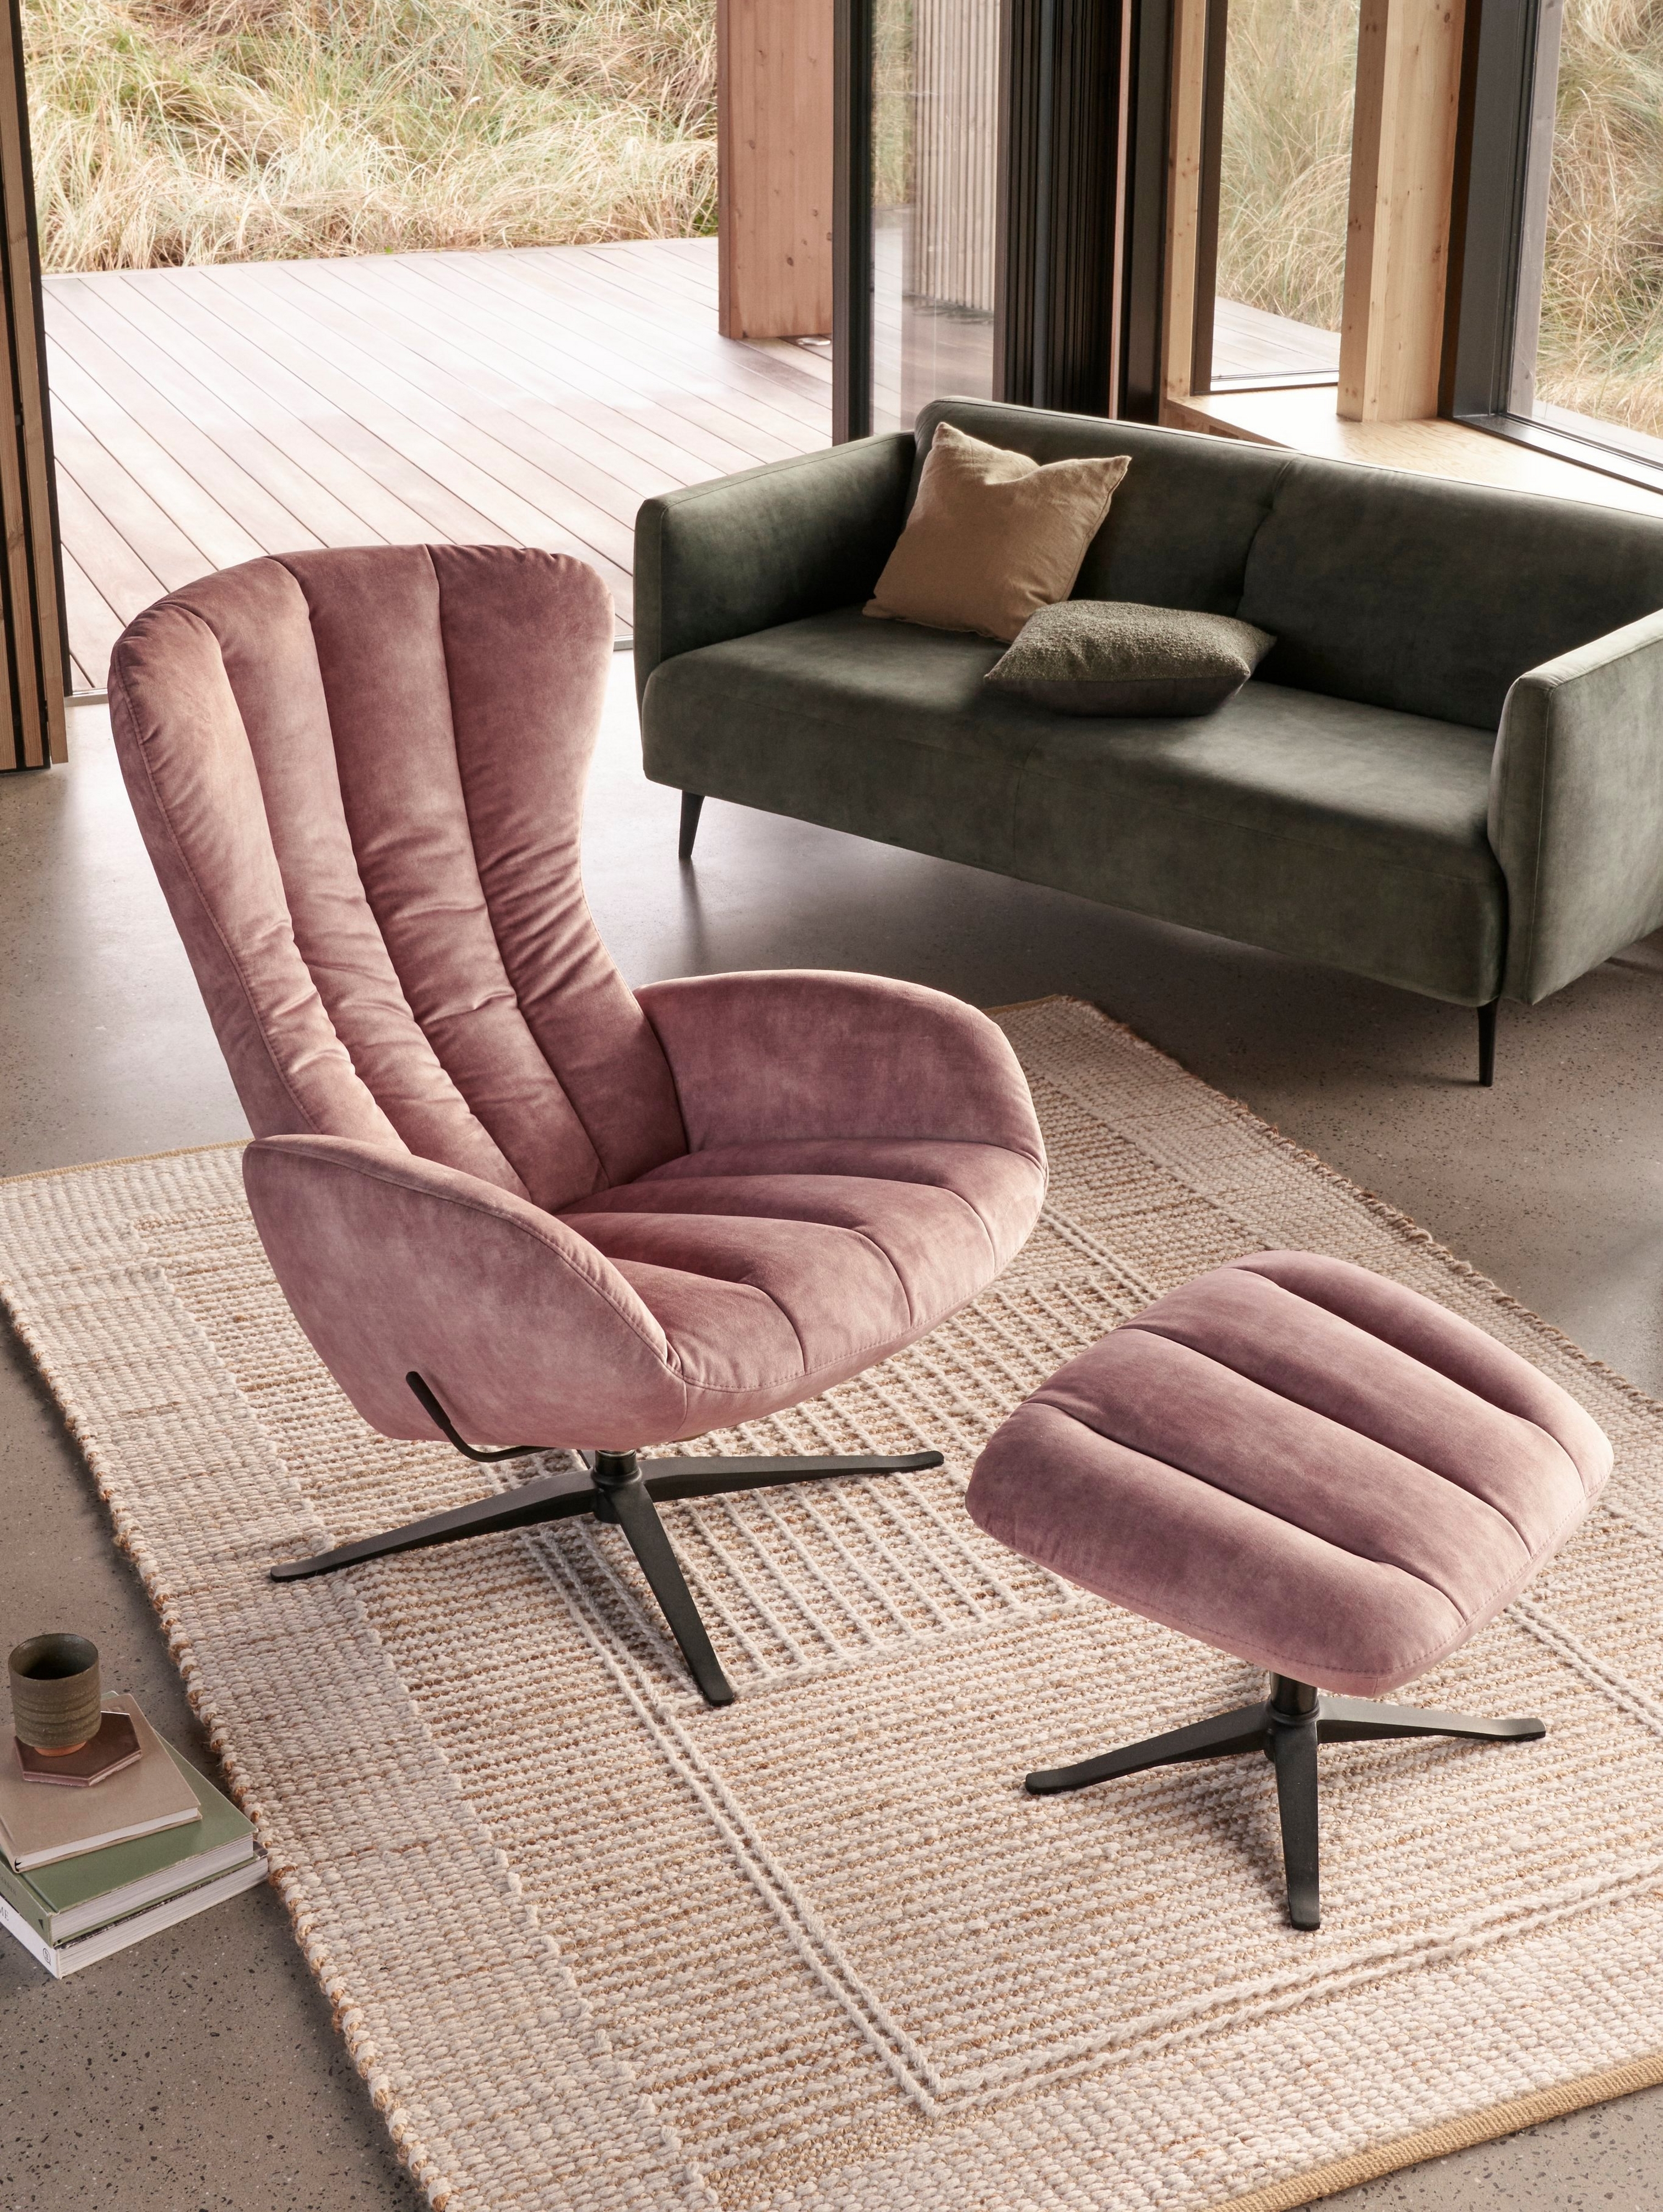 Светлая гостиная с креслом Tilburg и подставкой для ног в тон с обивкой тканью Ravello пыльно-розового цвета.